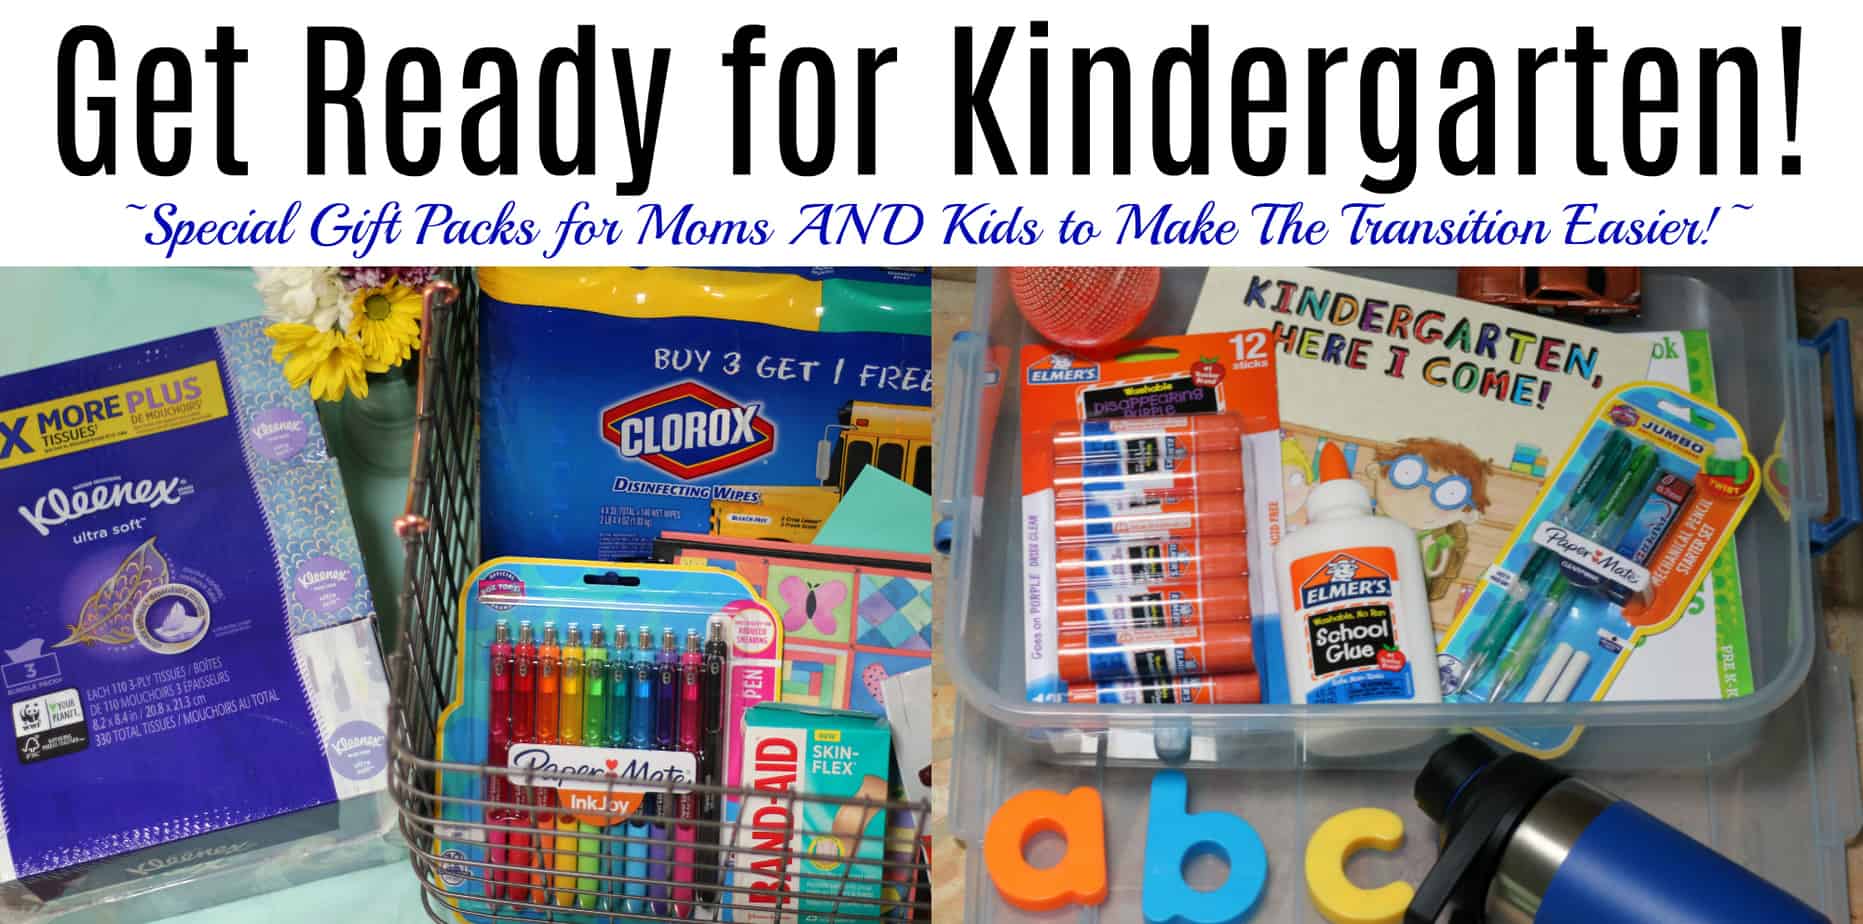 get ready for kindergarten gift packs